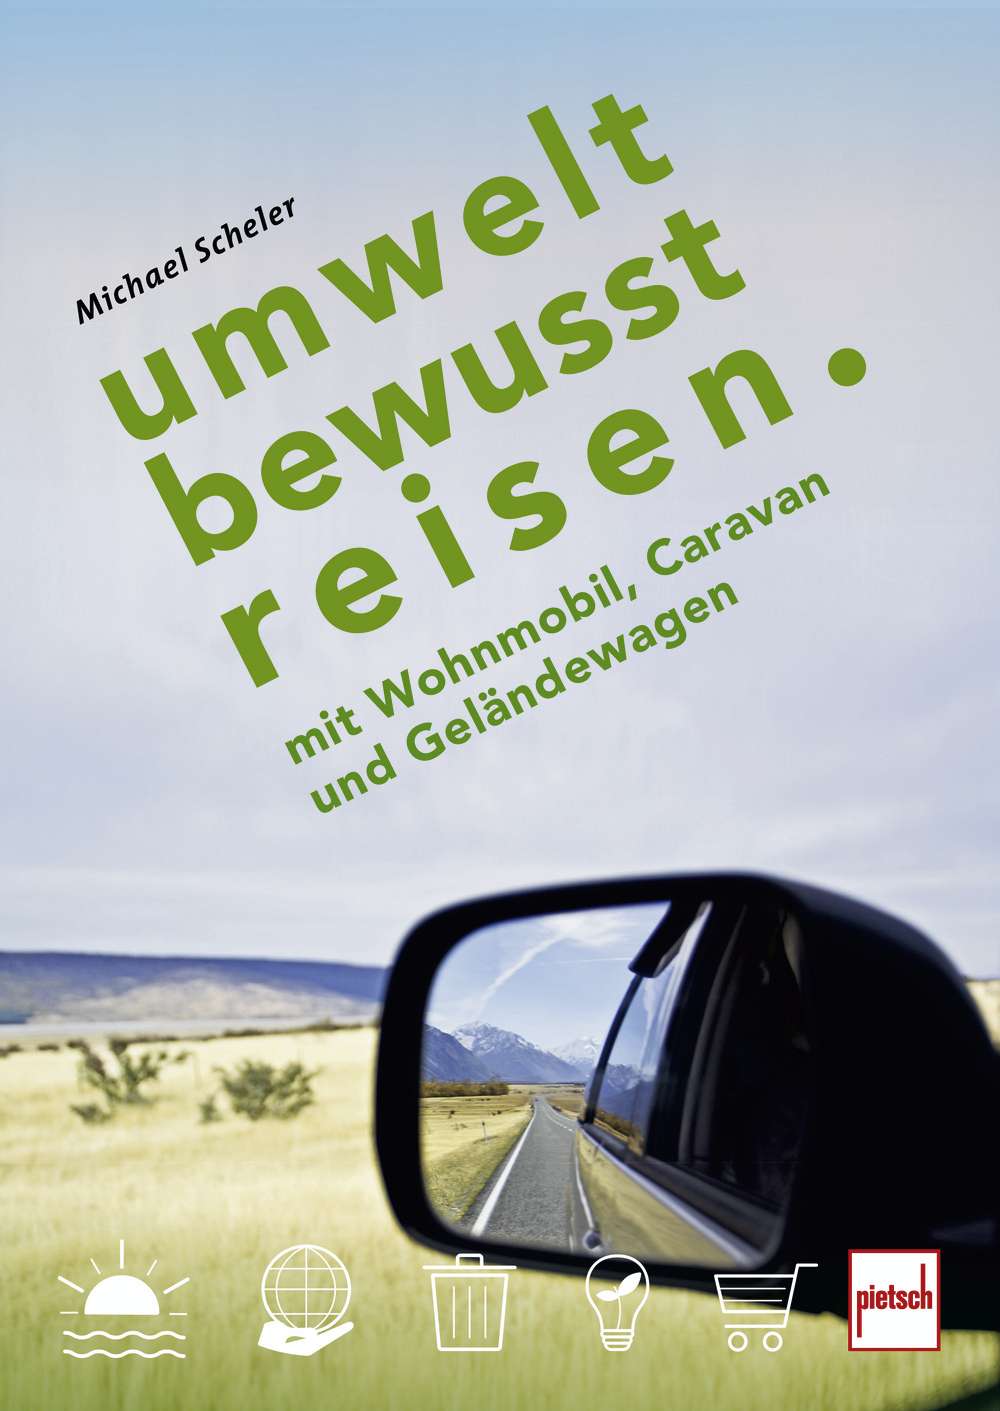 Michael Scheler – Umweltbewusst Reisen mit Wohnmobil, Caravan & Geländewagen